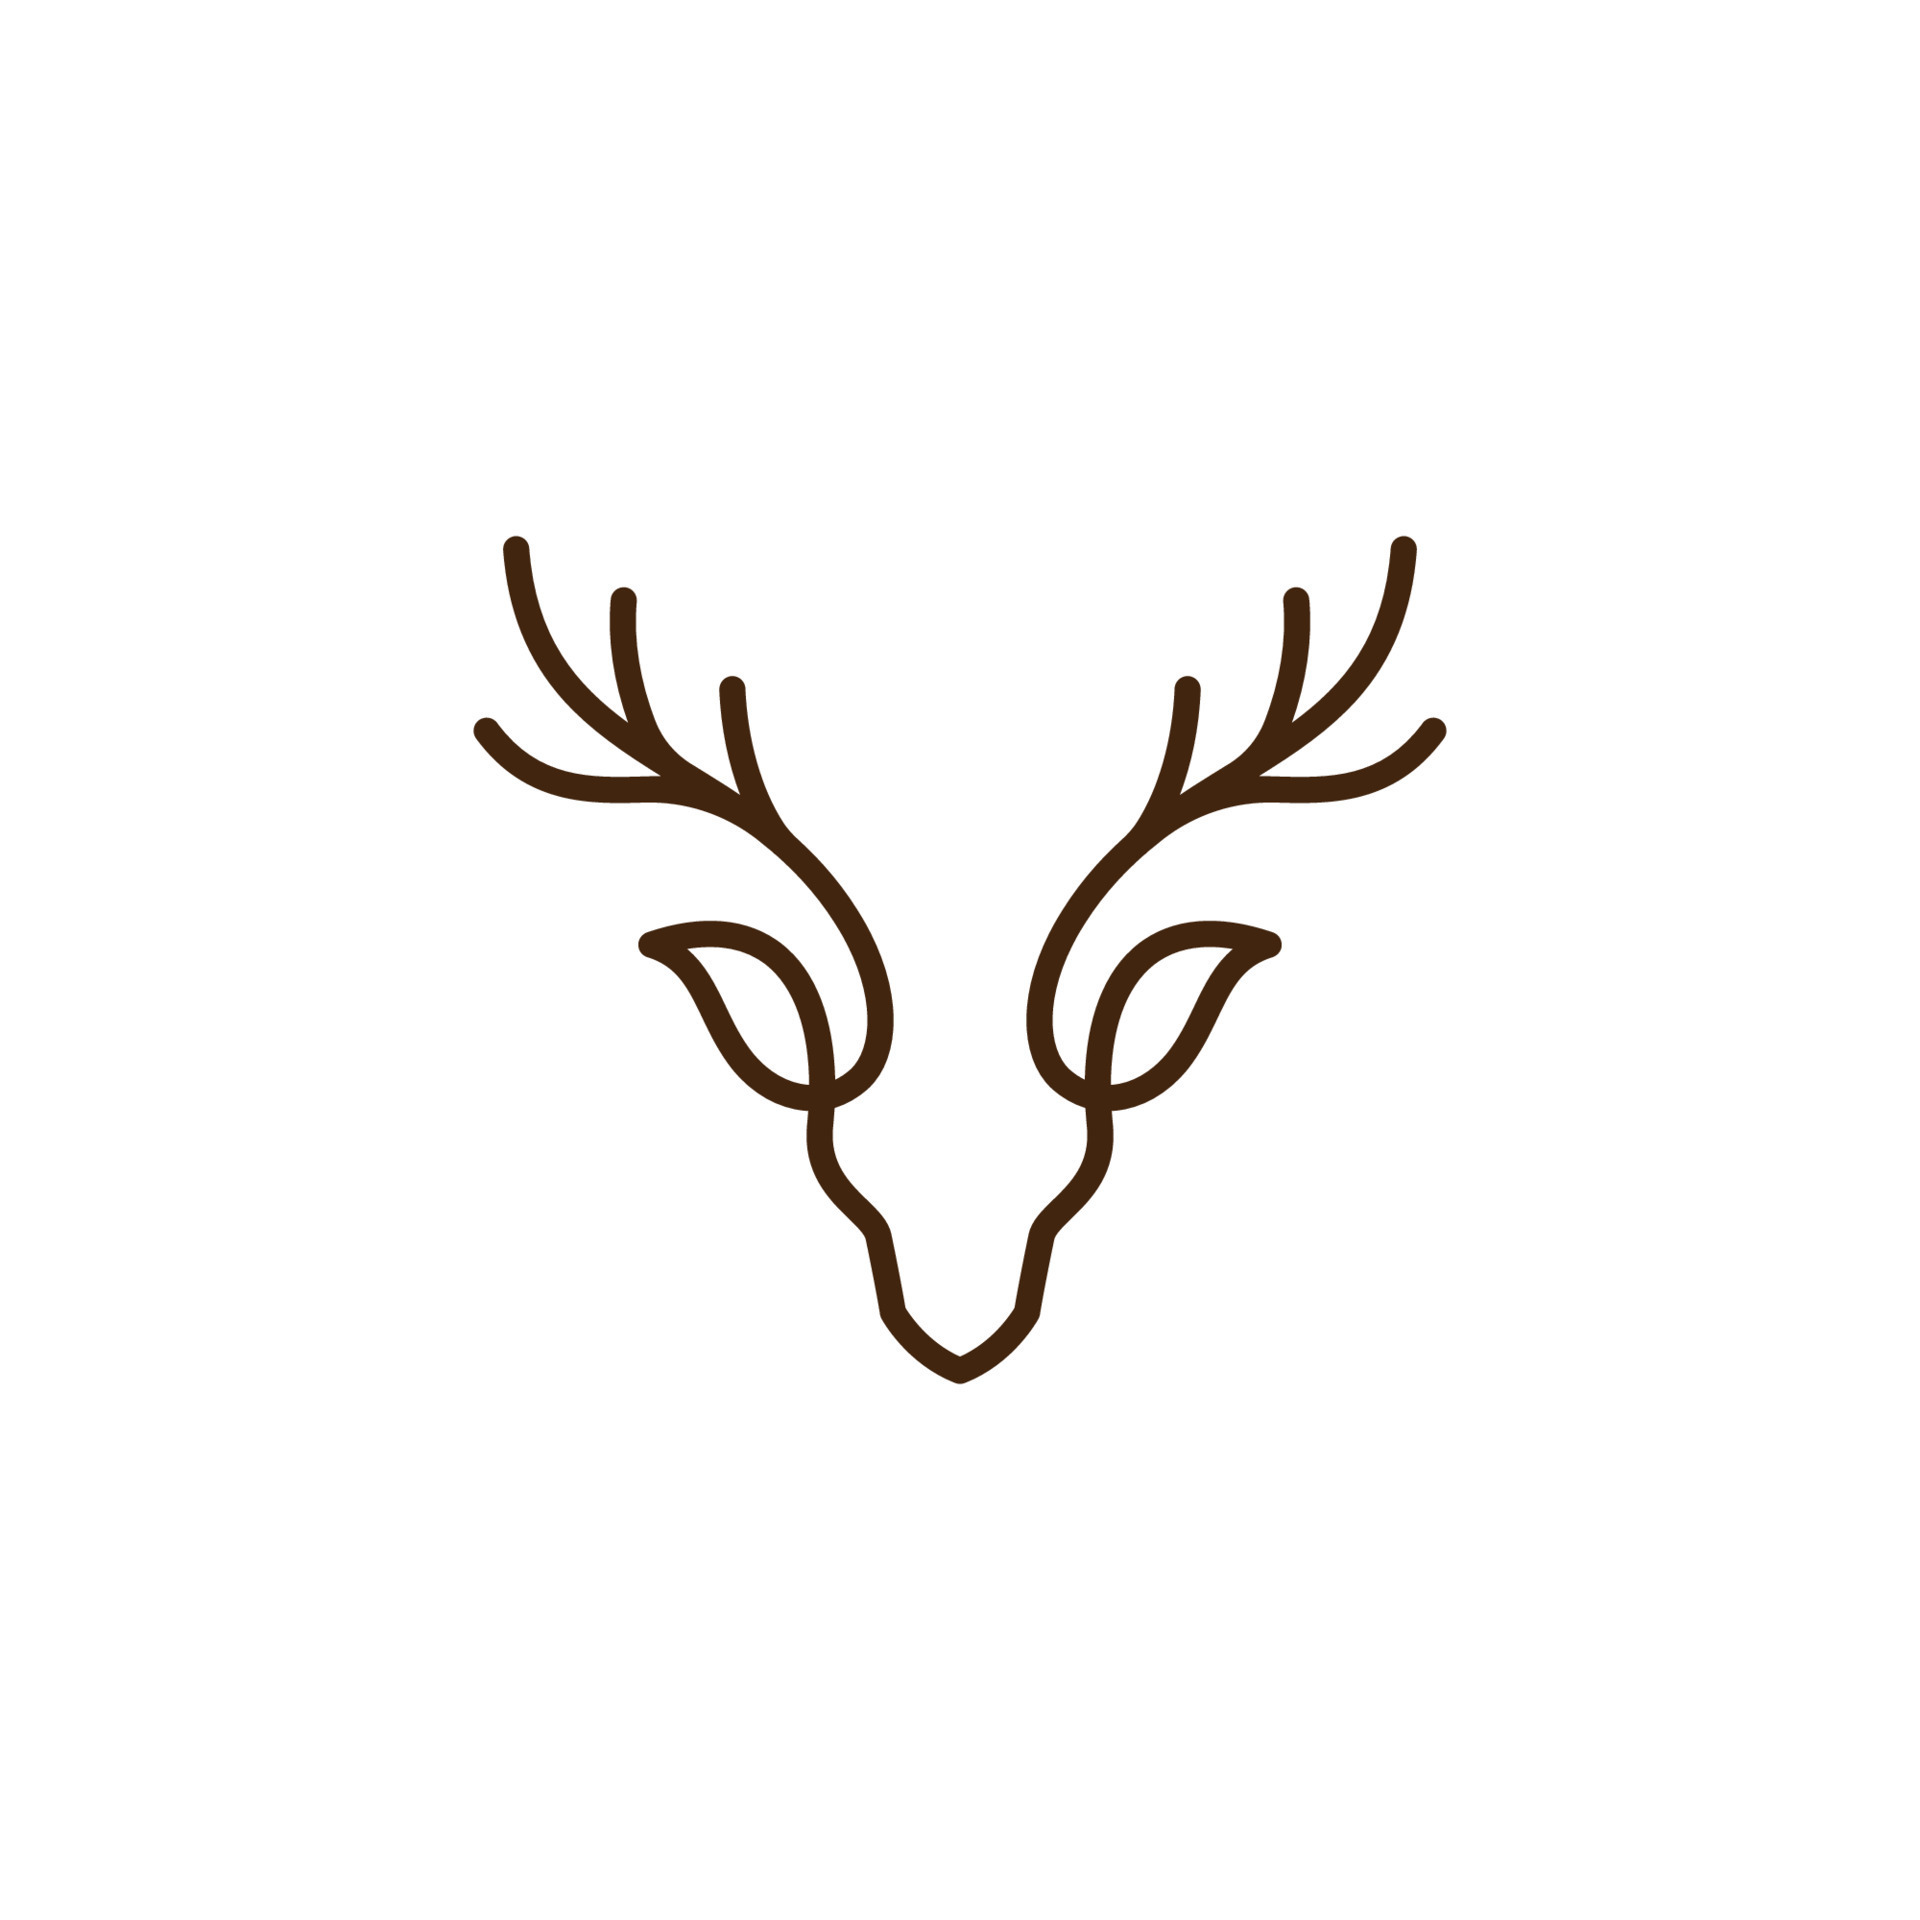 Deer head creative logo design vector 10606616 Vector Art at Vecteezy